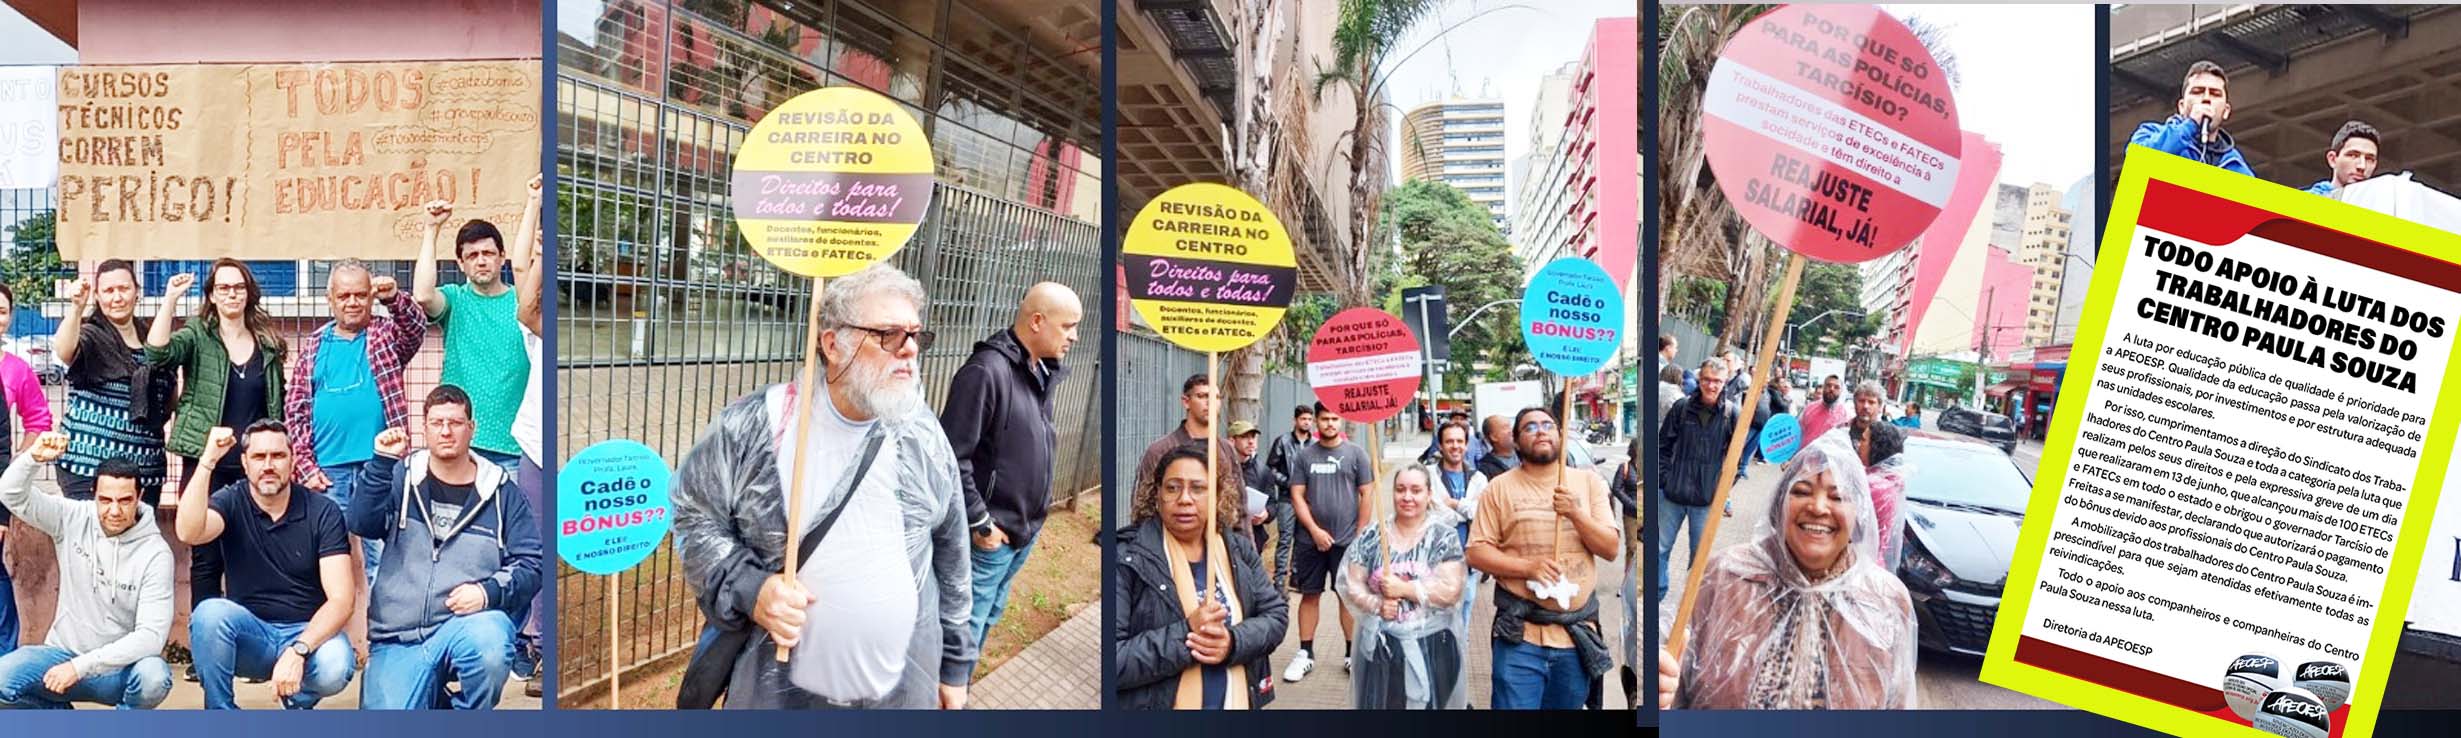 Entidade irmã: Apeoesp manifesta apoio à luta dos trabalhadores do Centro Paula Souza